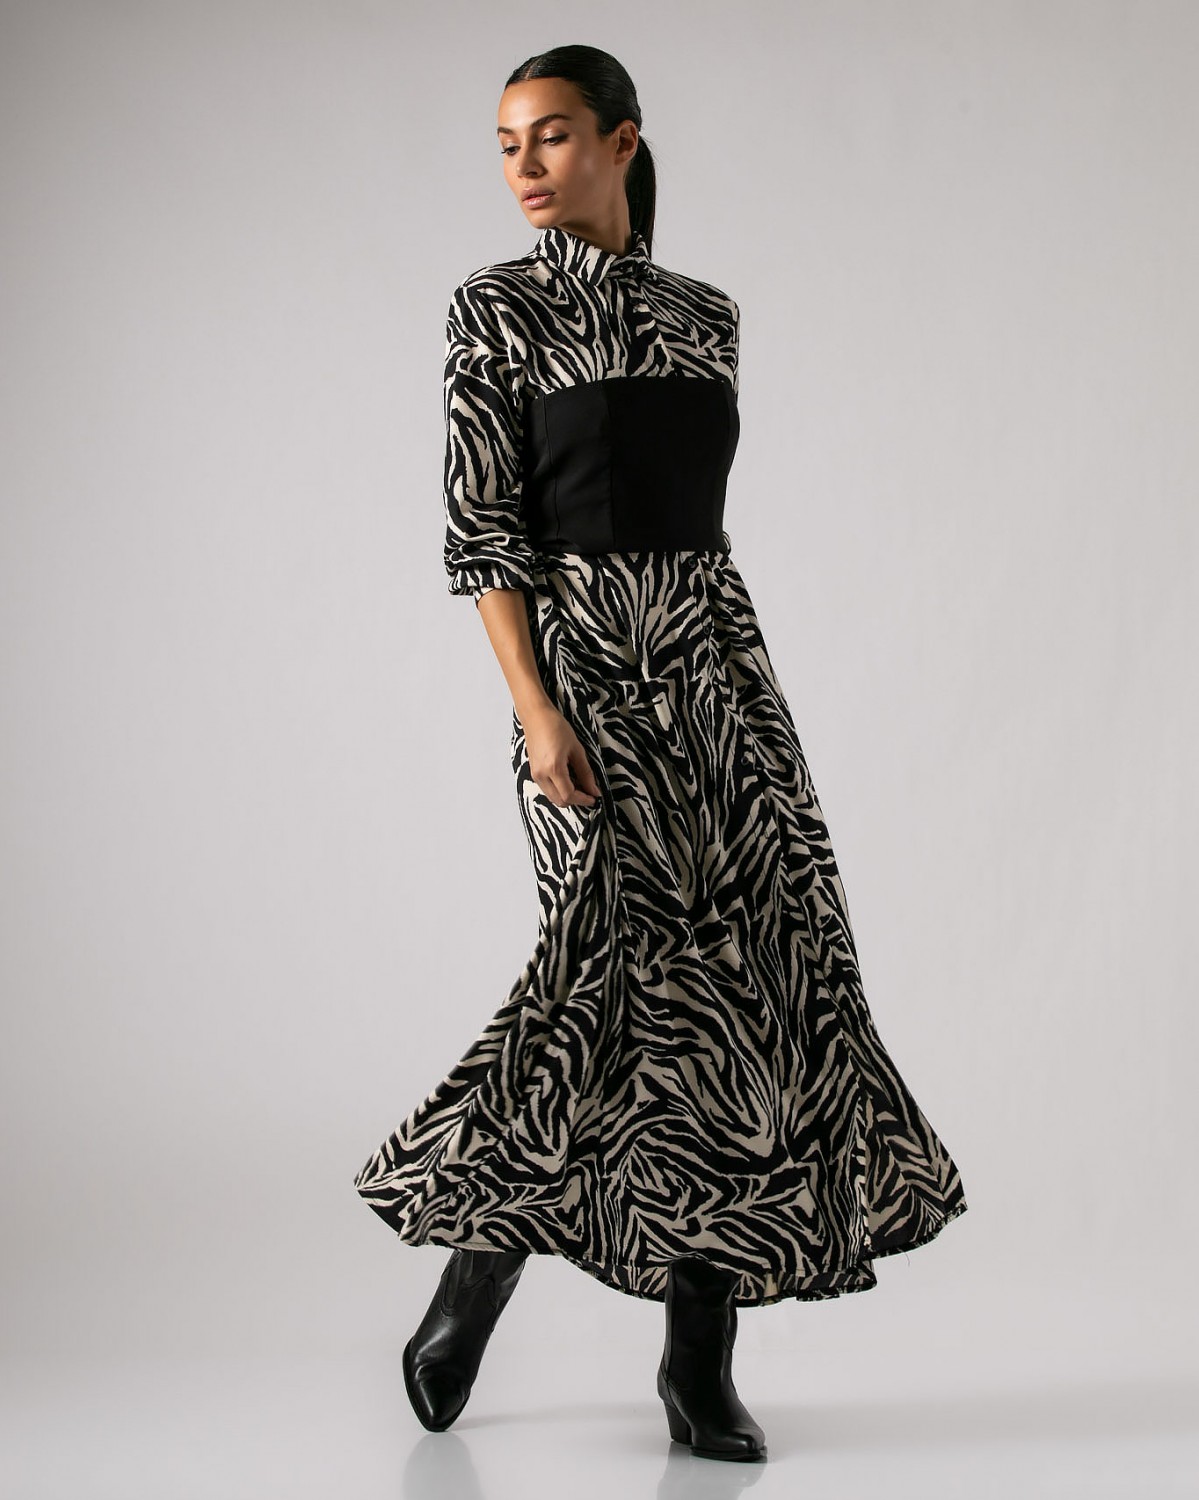 Φόρεμα σεμιζιέ 3/4 ζεβρέ Μαύρο - Μπεζ ζεβρέ 